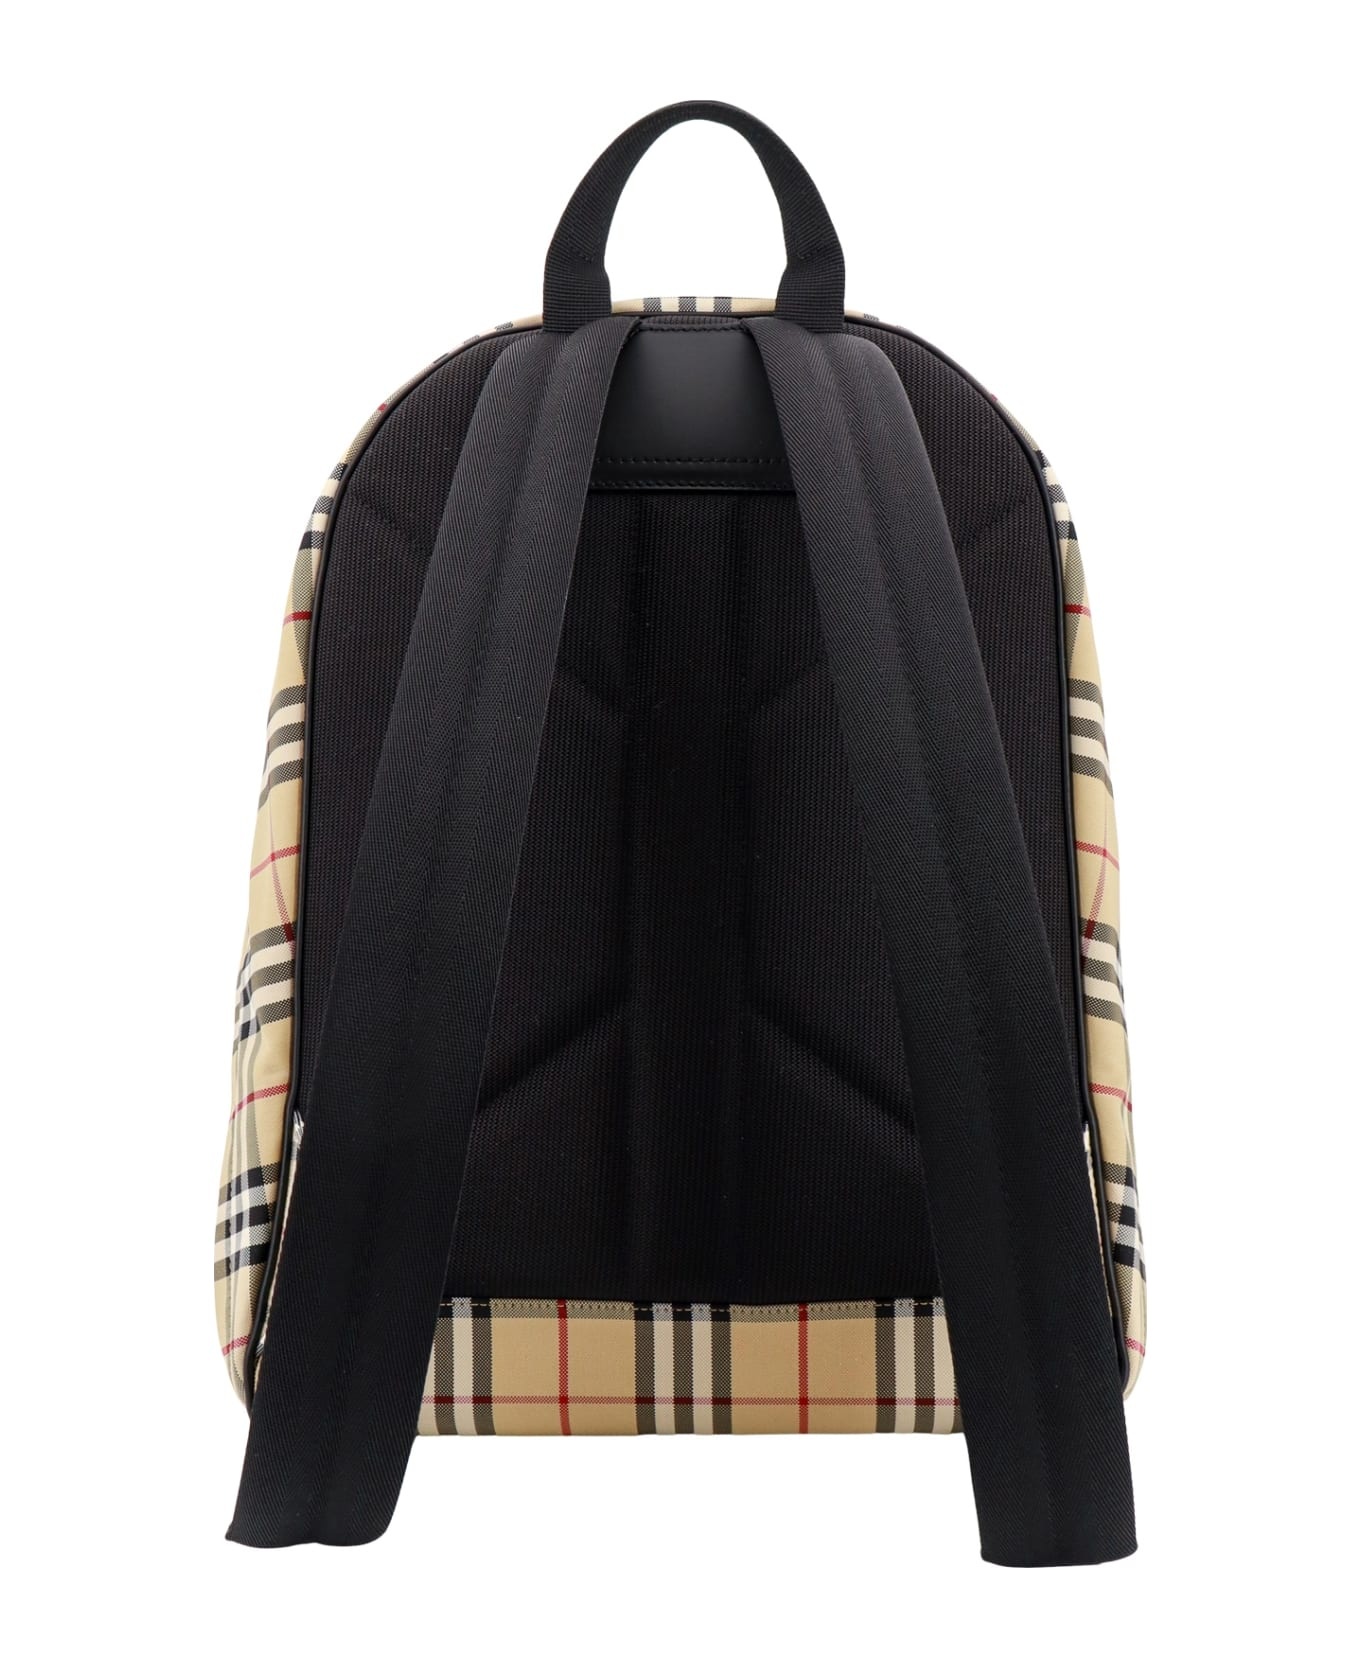 Backpack - 2